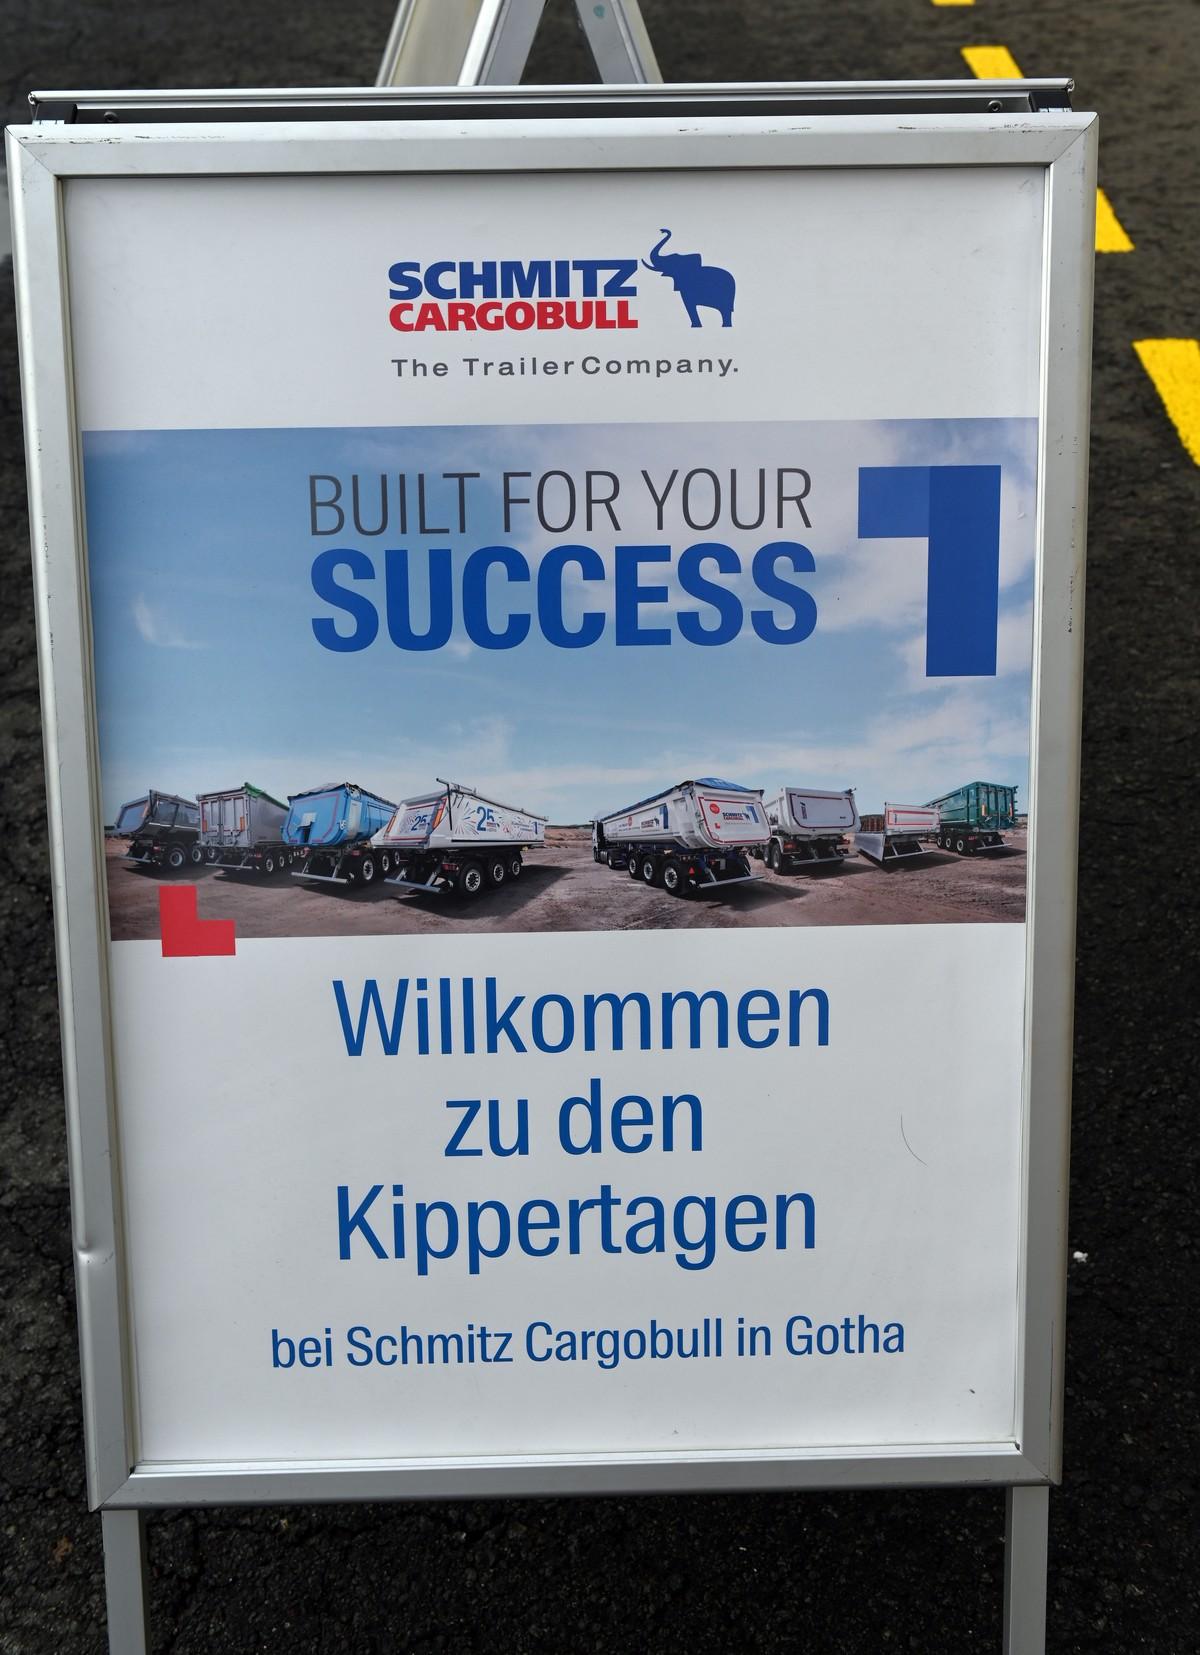 Willkommensgruß von Schmitz Cargobull in Gotha mit großem Plakat-Aufsteller. | Foto: Quatex